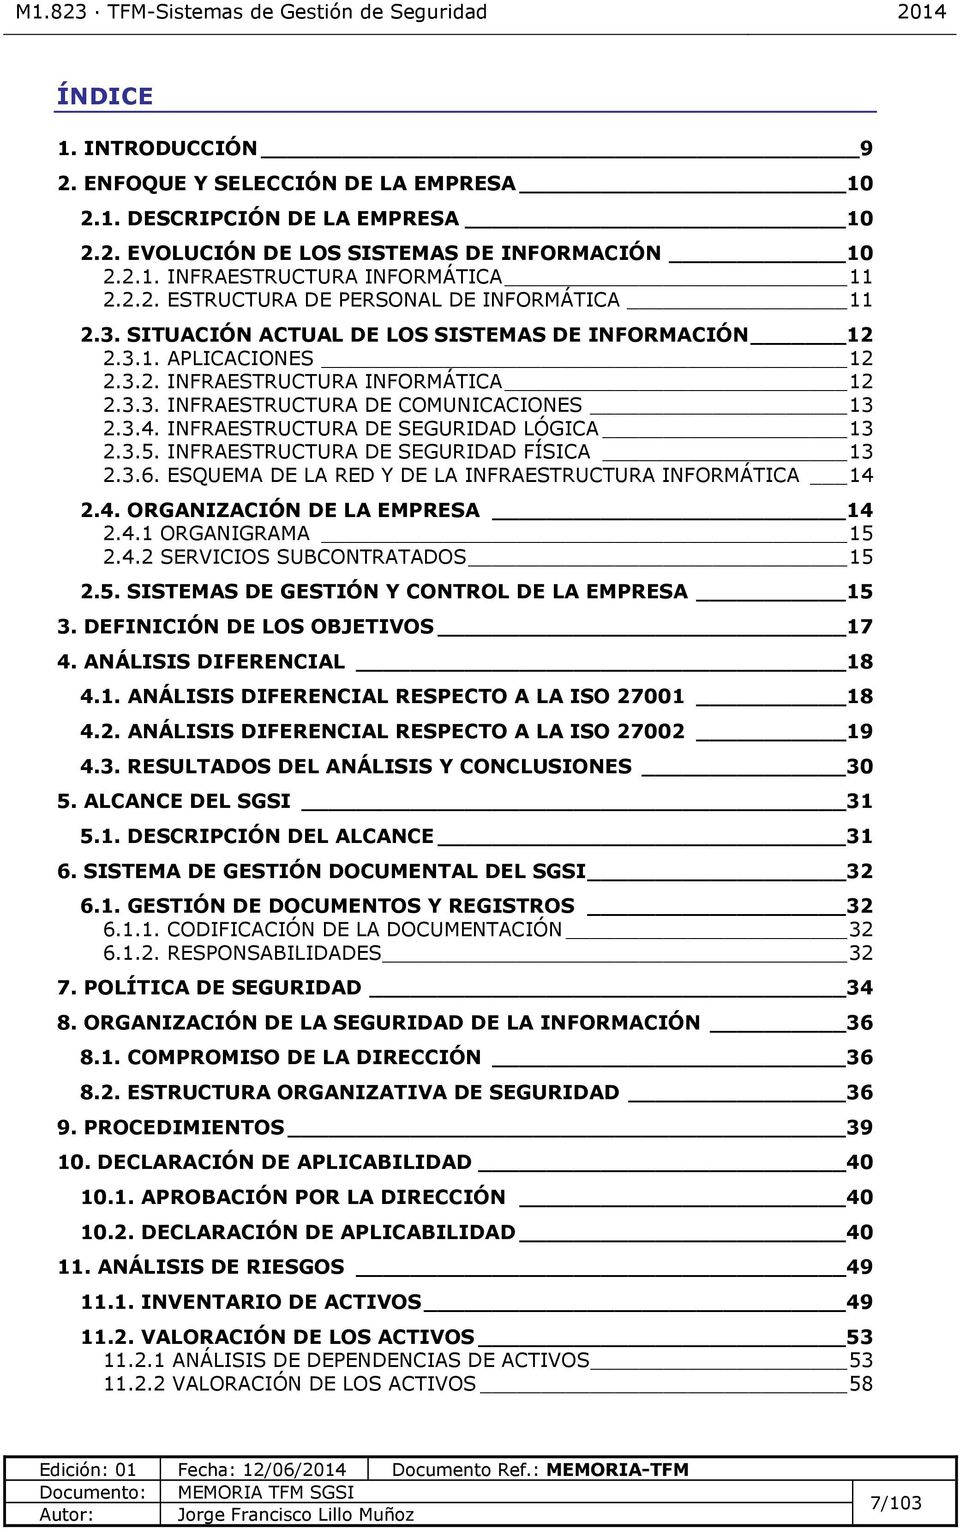 INFRAESTRUCTURA DE SEGURIDAD LÓGICA 13 2.3.5. INFRAESTRUCTURA DE SEGURIDAD FÍCA 13 2.3.6. ESQUEMA DE LA RED Y DE LA INFRAESTRUCTURA INFORMÁTICA 14 2.4. ORGANIZACIÓN DE LA EMPRESA 14 2.4.1 ORGANIGRAMA 15 2.